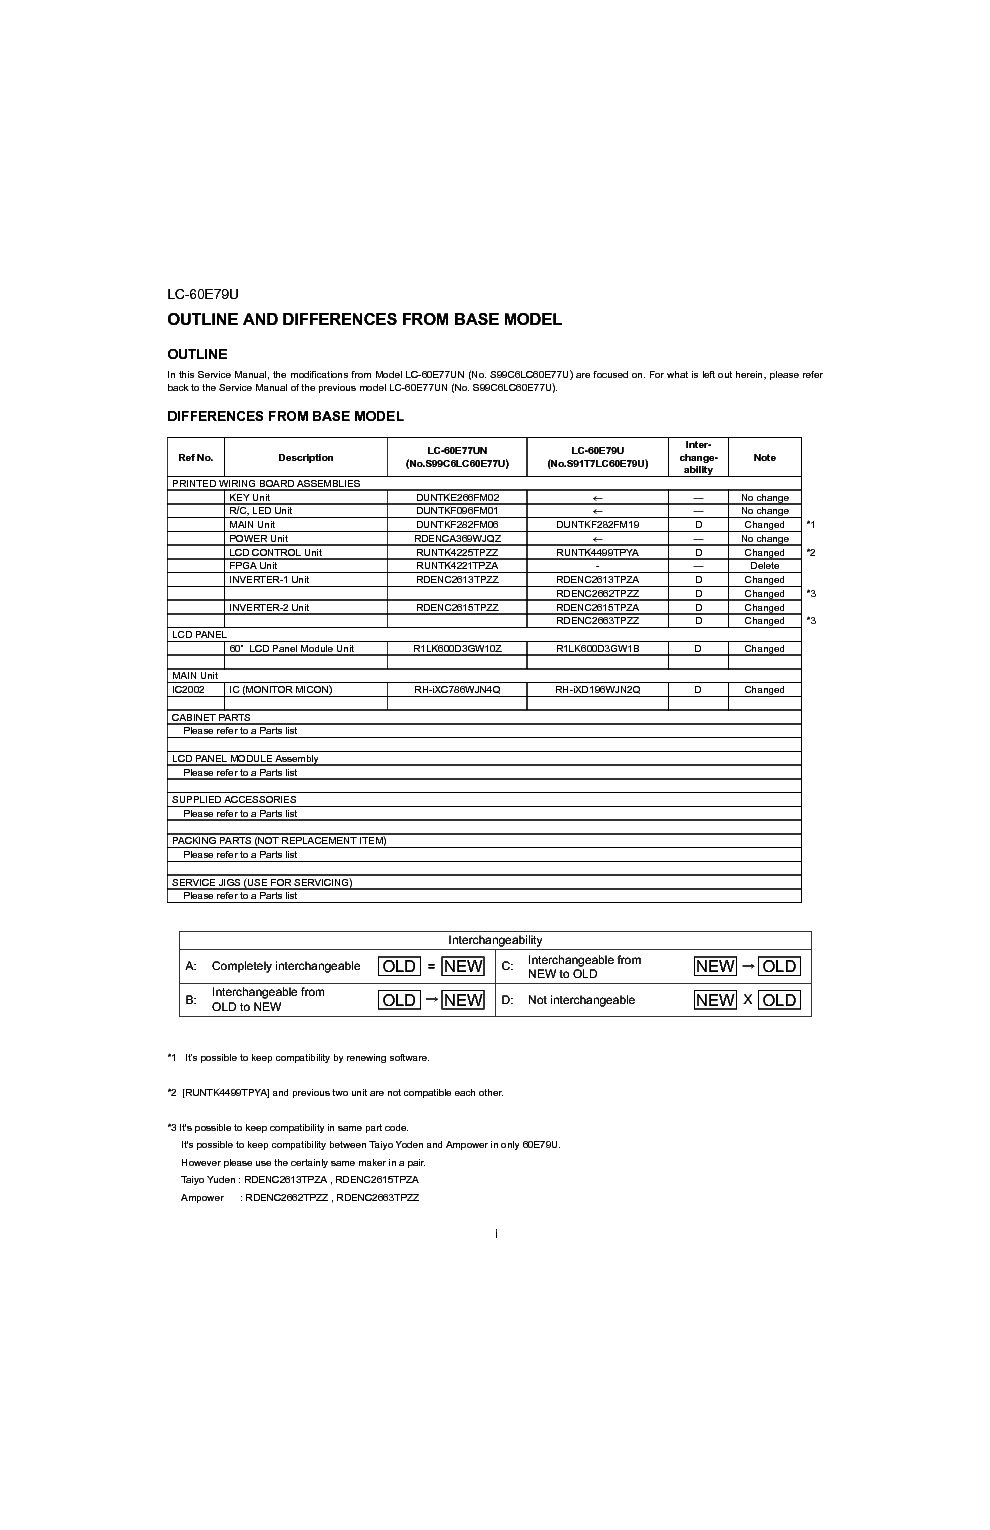 SHARP LC-60E79U service manual (2nd page)